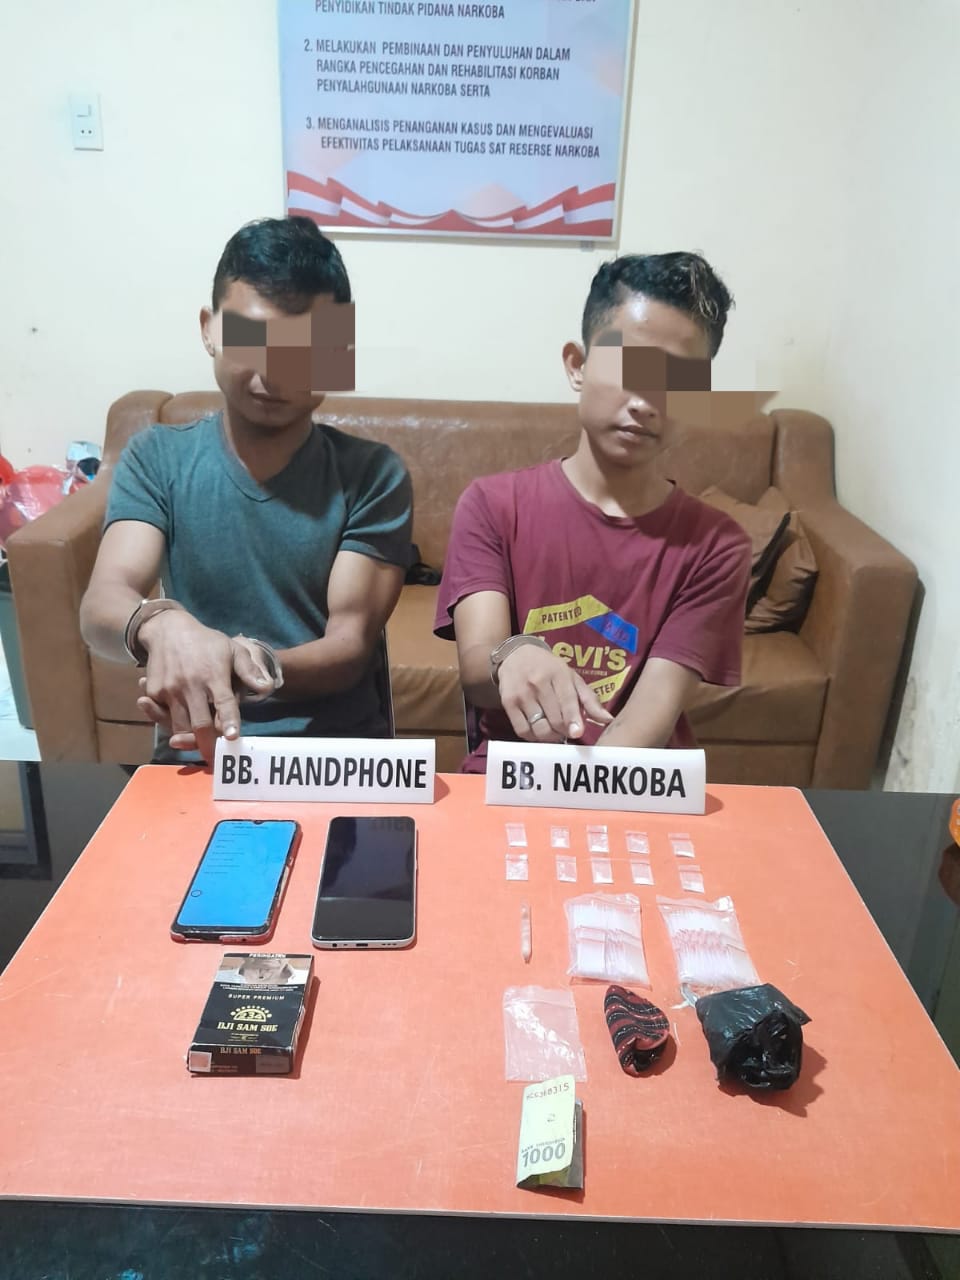 Lagi Transaksi Narkoba Dua Pelaku Warga Desa Pulau Payung, di Ringkus Tim Ojoloyo